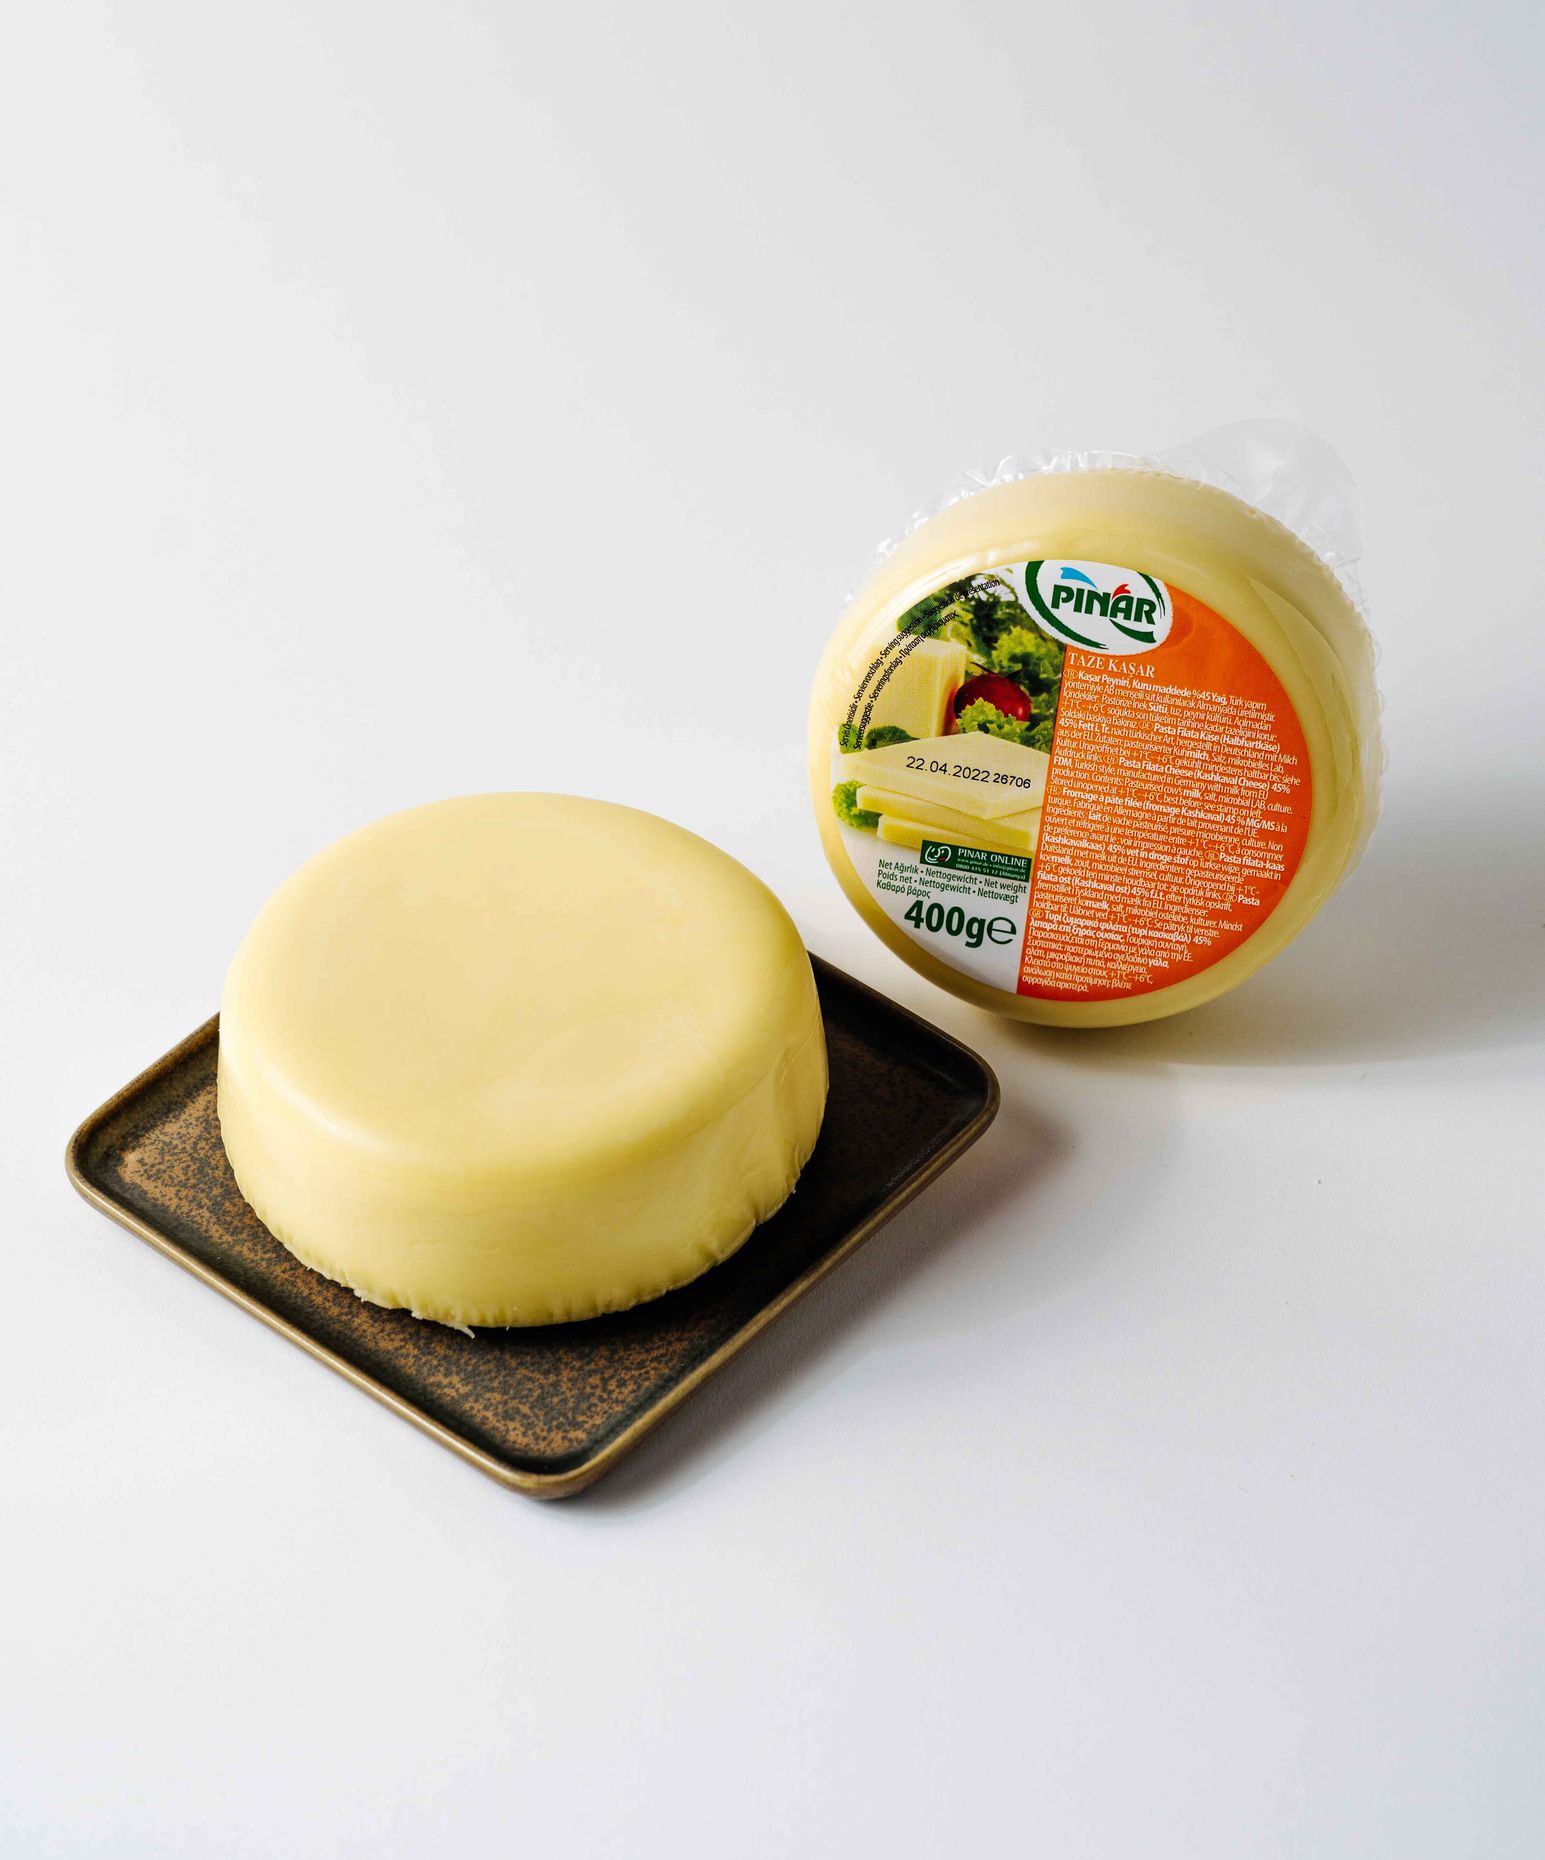 Pinar  Kashkaval Cheese